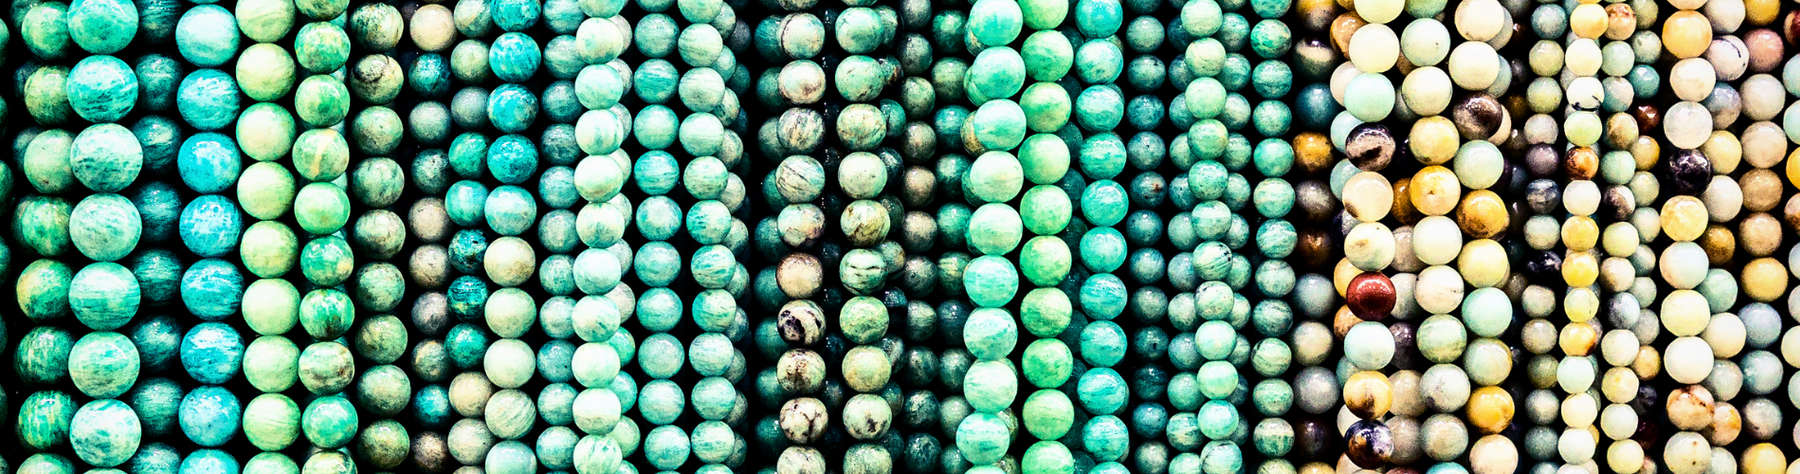 10 dingen die je niet wist over de kleur Turquoise